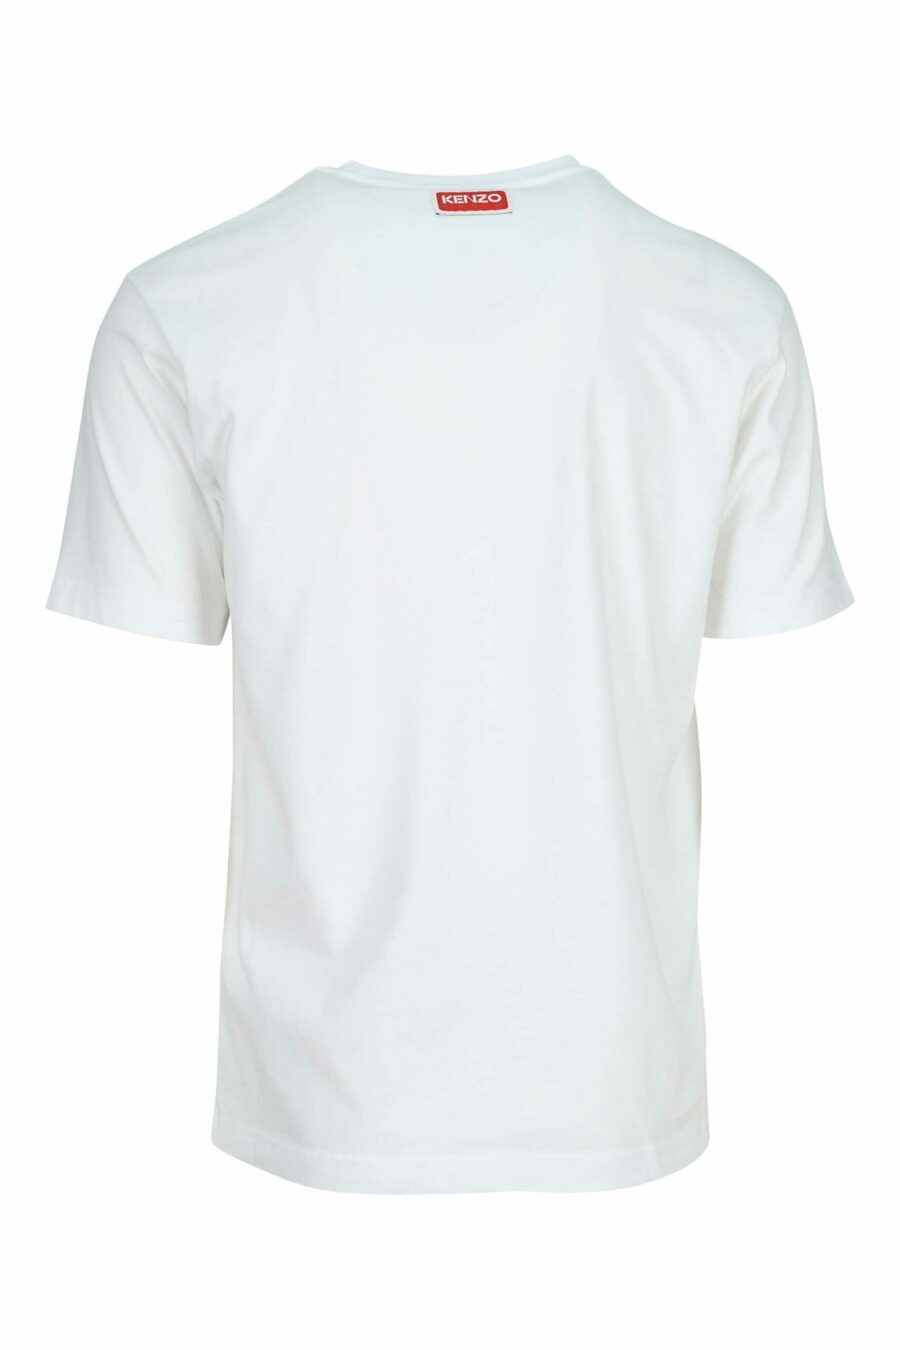 Camiseta blanca con maxilogo tigre multicolor - 3612230625136 1 scaled